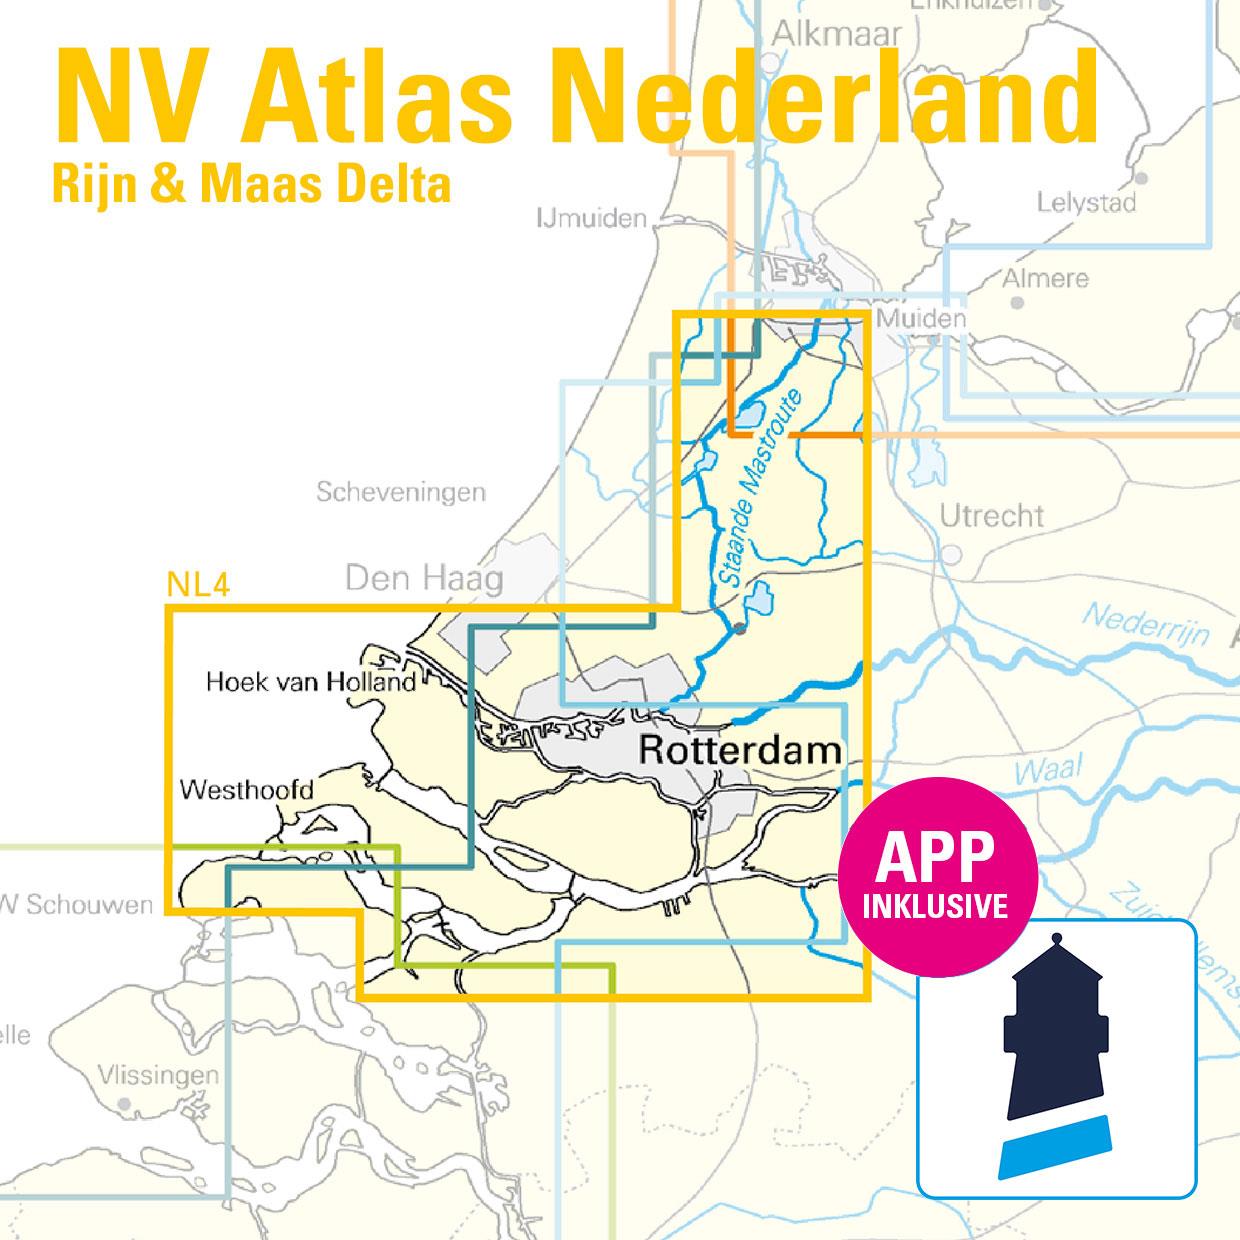 NV Charts Nederland NL4 - Rijn & Maas Delta